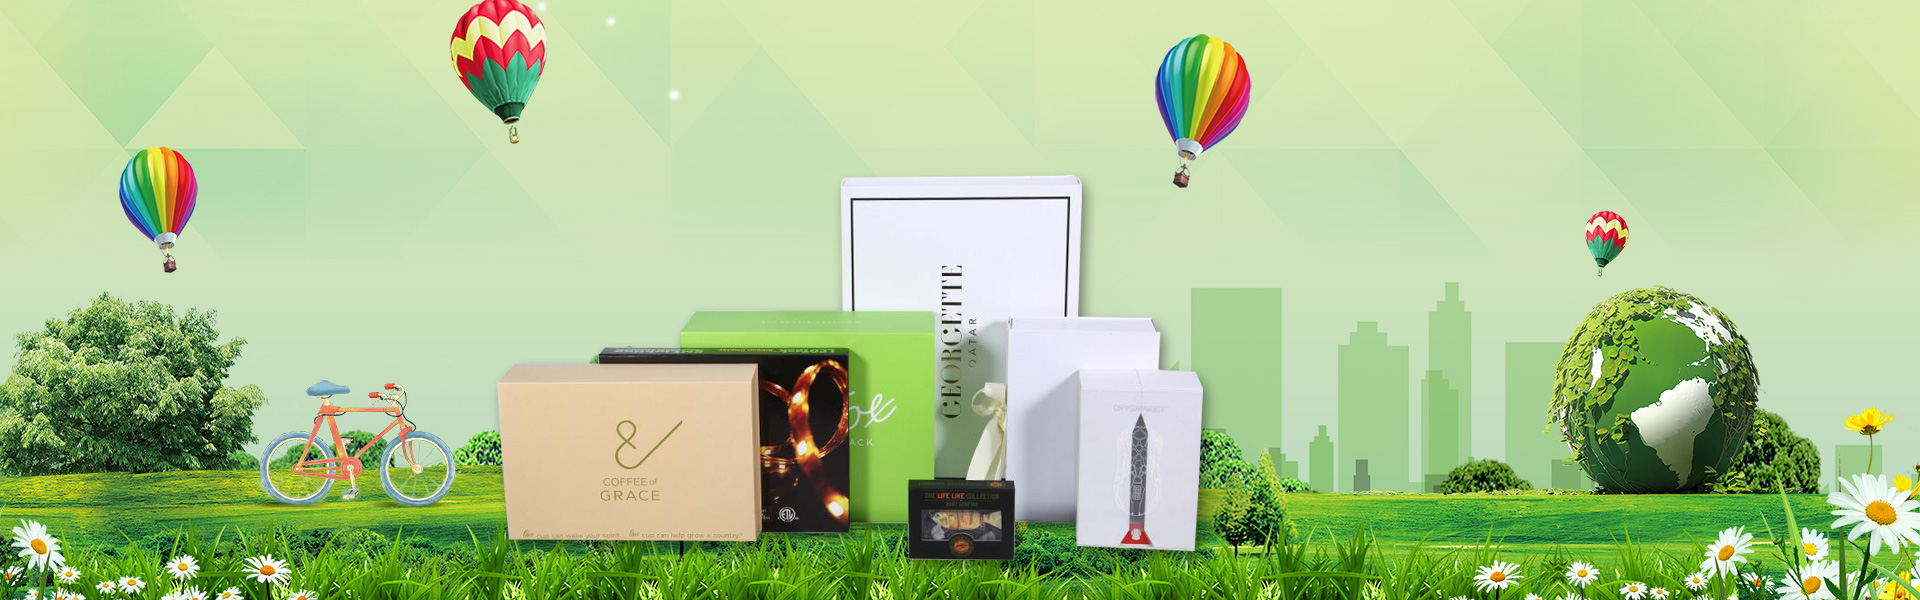 Подаръчна кутия, опаковъчна кутия, етикет,Dongguan chengyuan packaging products Co,.Ltd